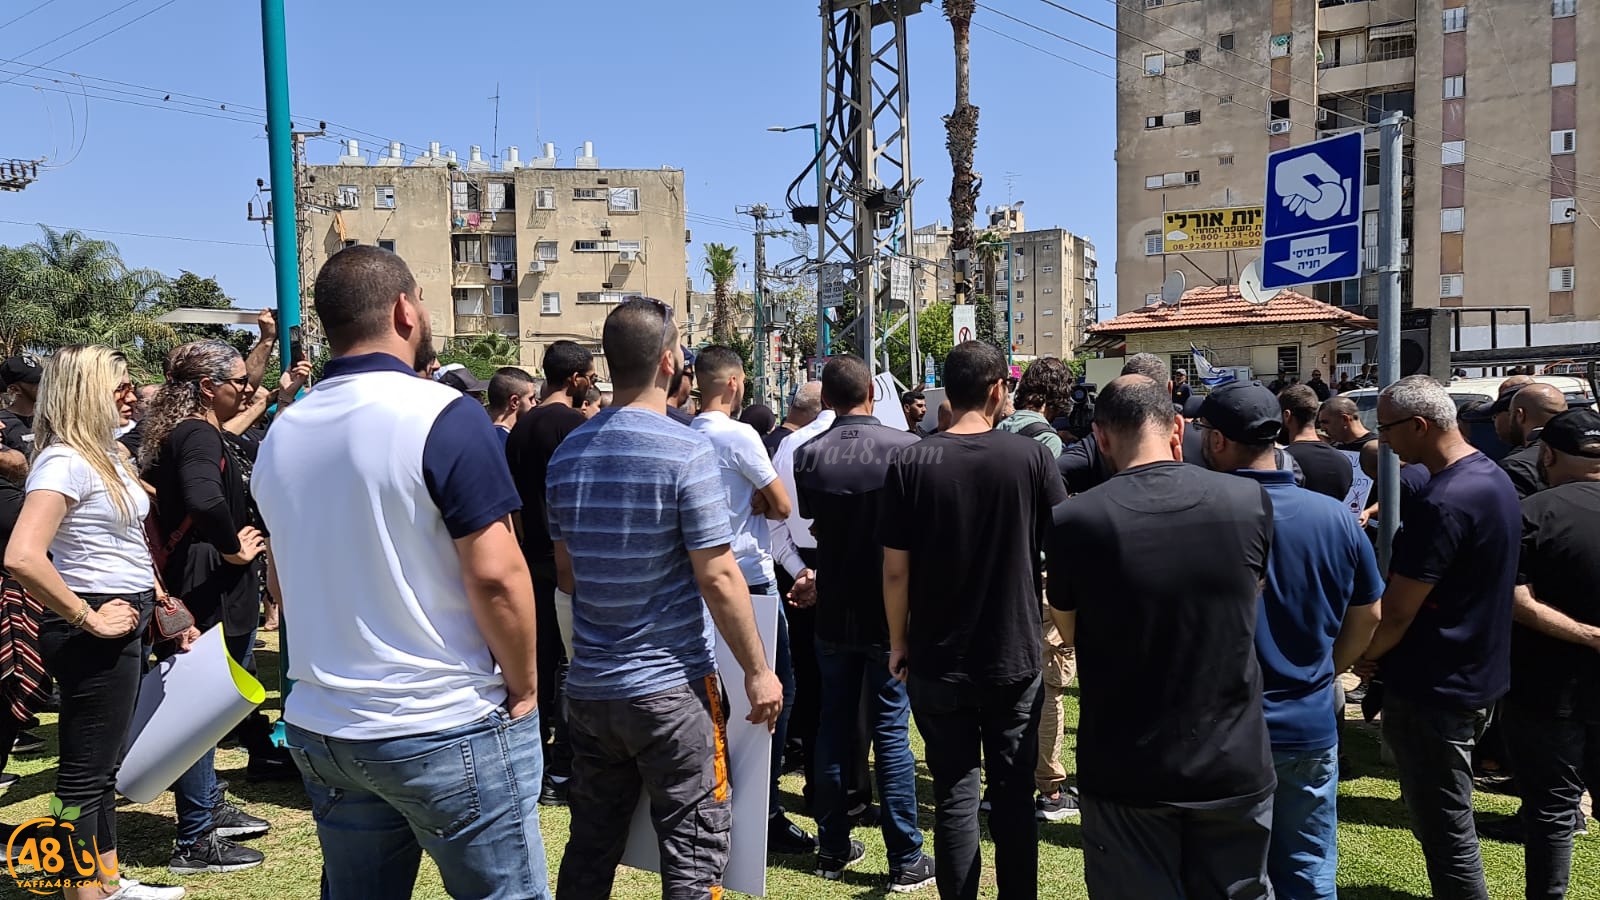 اللّد: العشرات يتظاهرون أمام المحكمة للمطالبة بإعتقال ومحاكمة قتلة الشهيد حسّونة